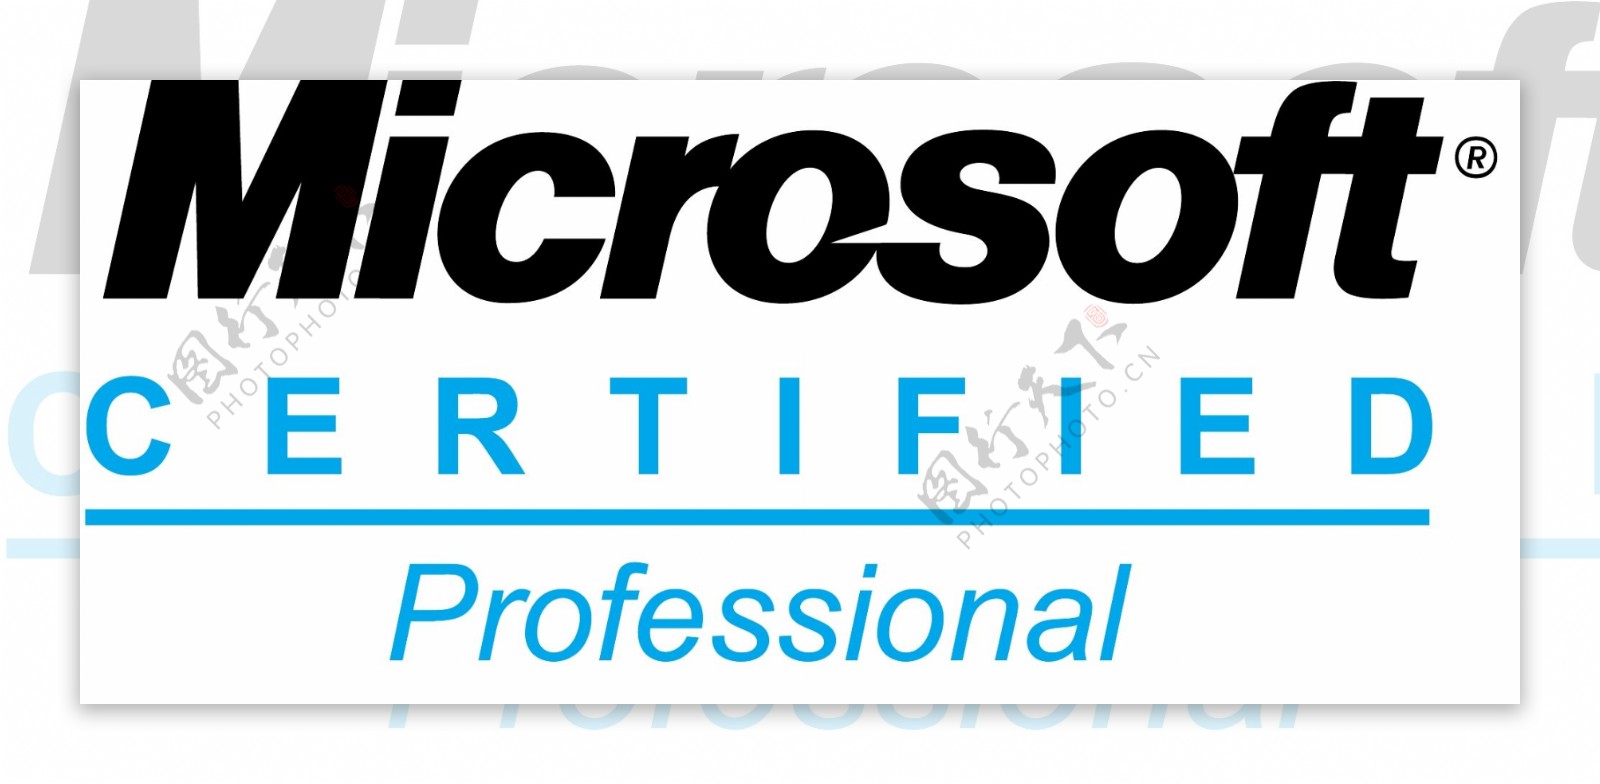 微软认证专家